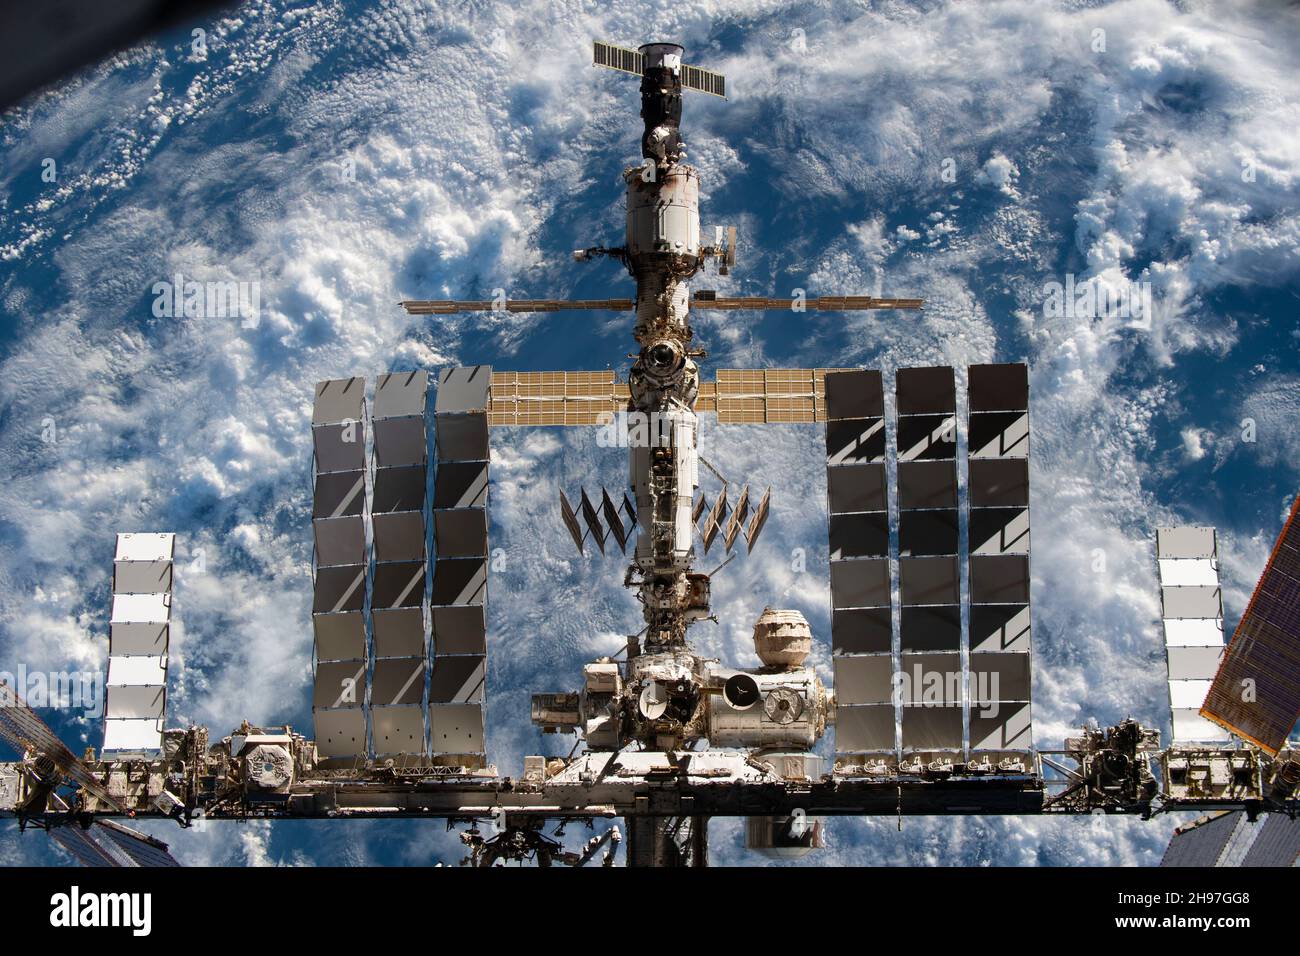 A BORD DE L'ÉQUIPAGE DRAGON ENDEAVOUR, EARTH - 08 novembre 2021 - la Station spatiale internationale est photographiée de l'équipage SpaceX Dragon Endeavour pendant une fl Banque D'Images